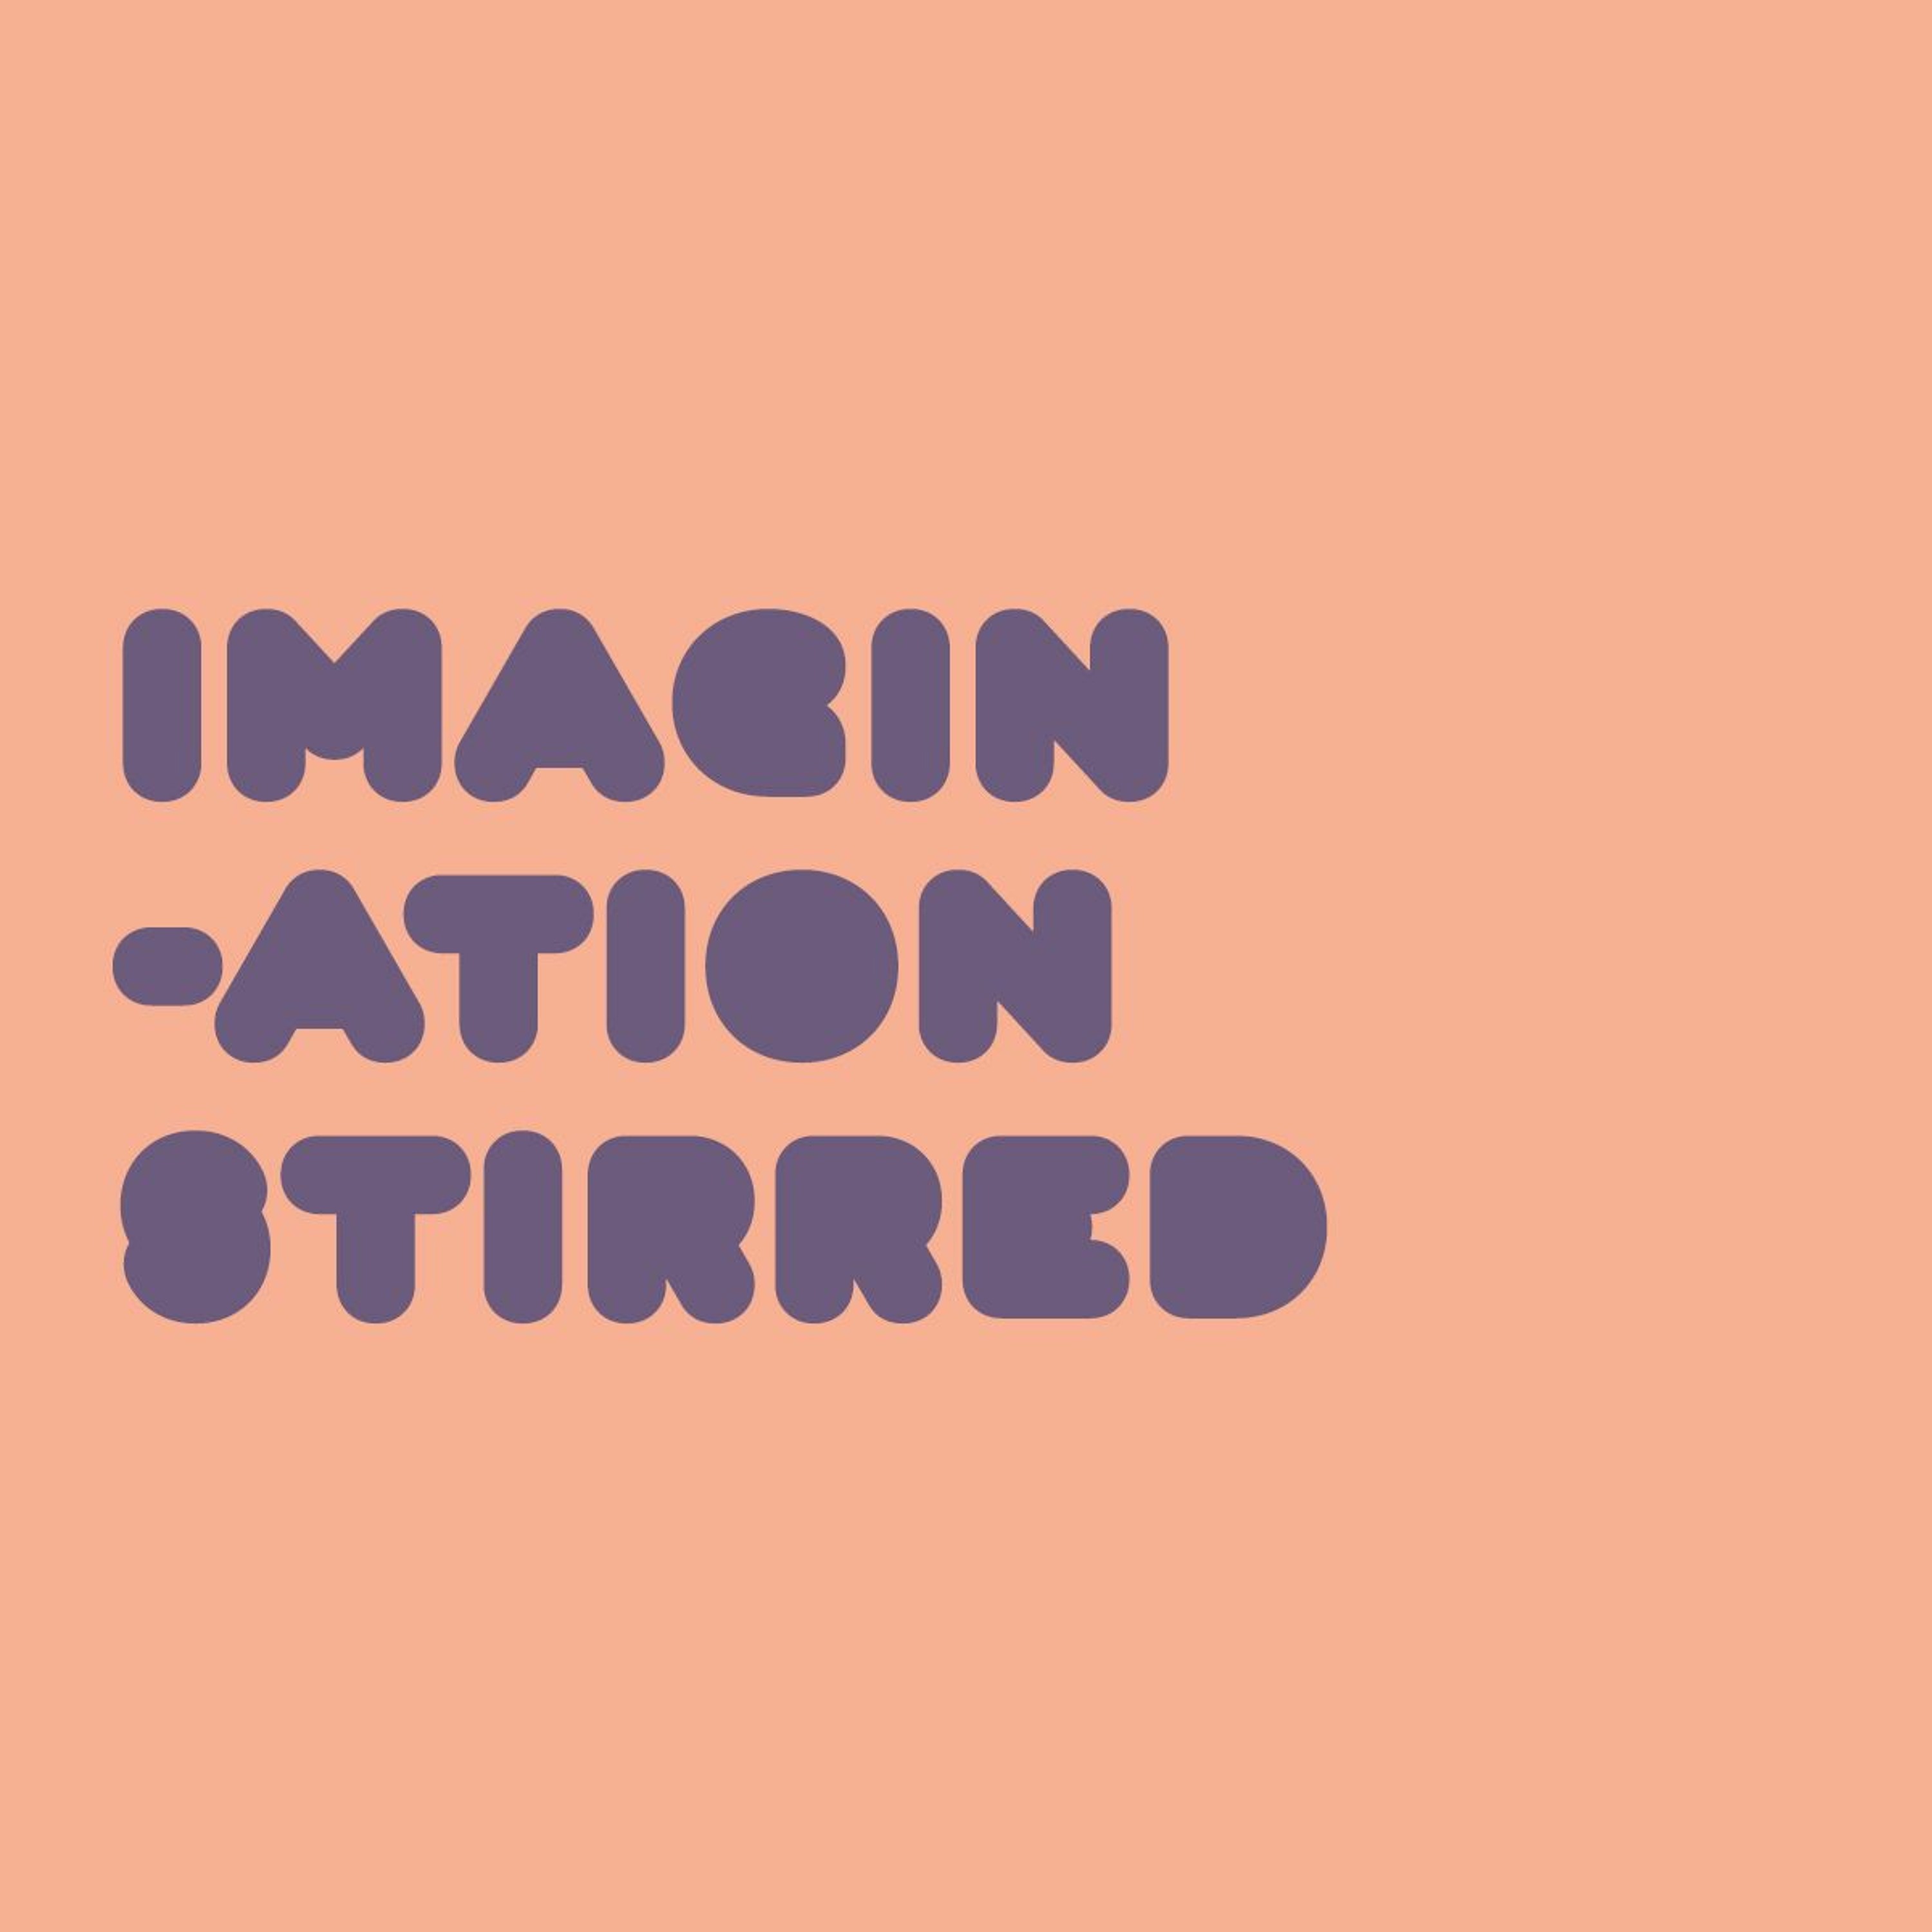 ’Imagination Stirred’ / Neil Dawson